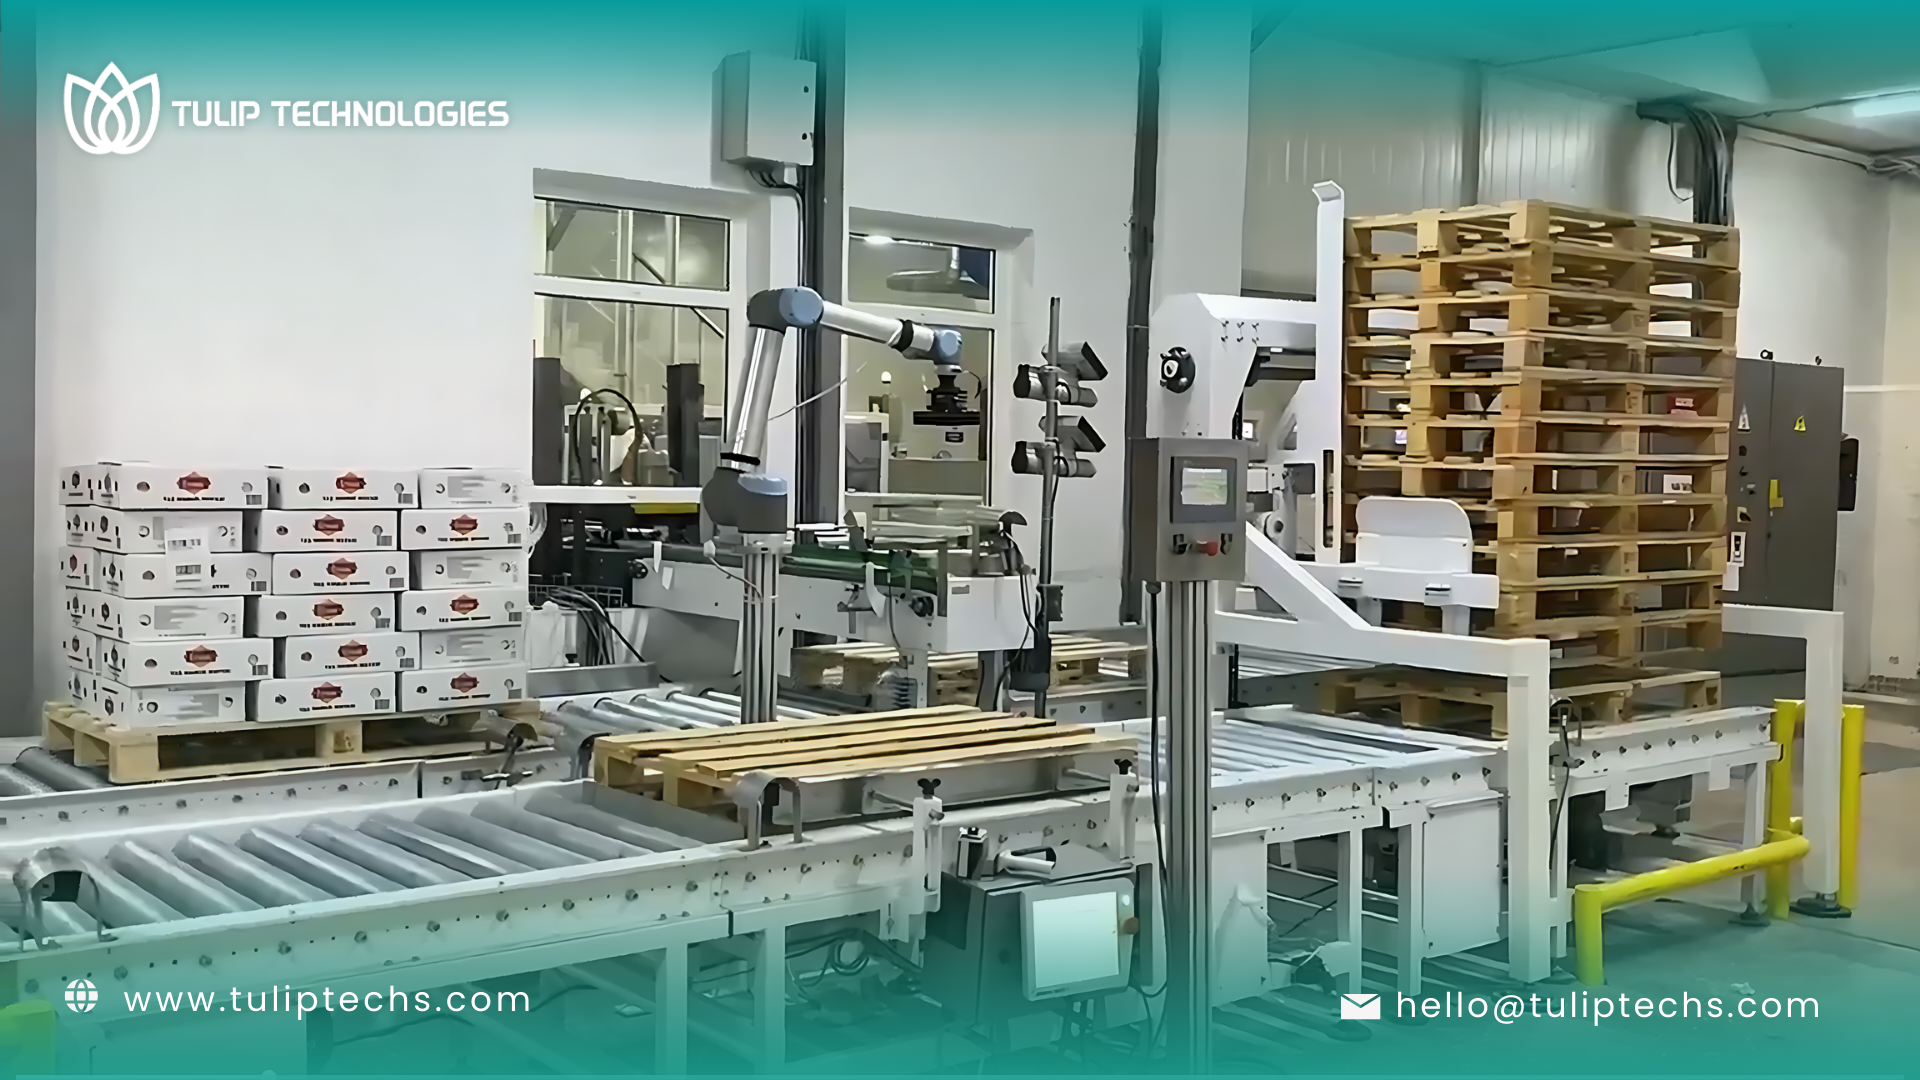 أهم 3 تطبيقات لروبوتات توليب للتقنيات في مصانع الأغذية